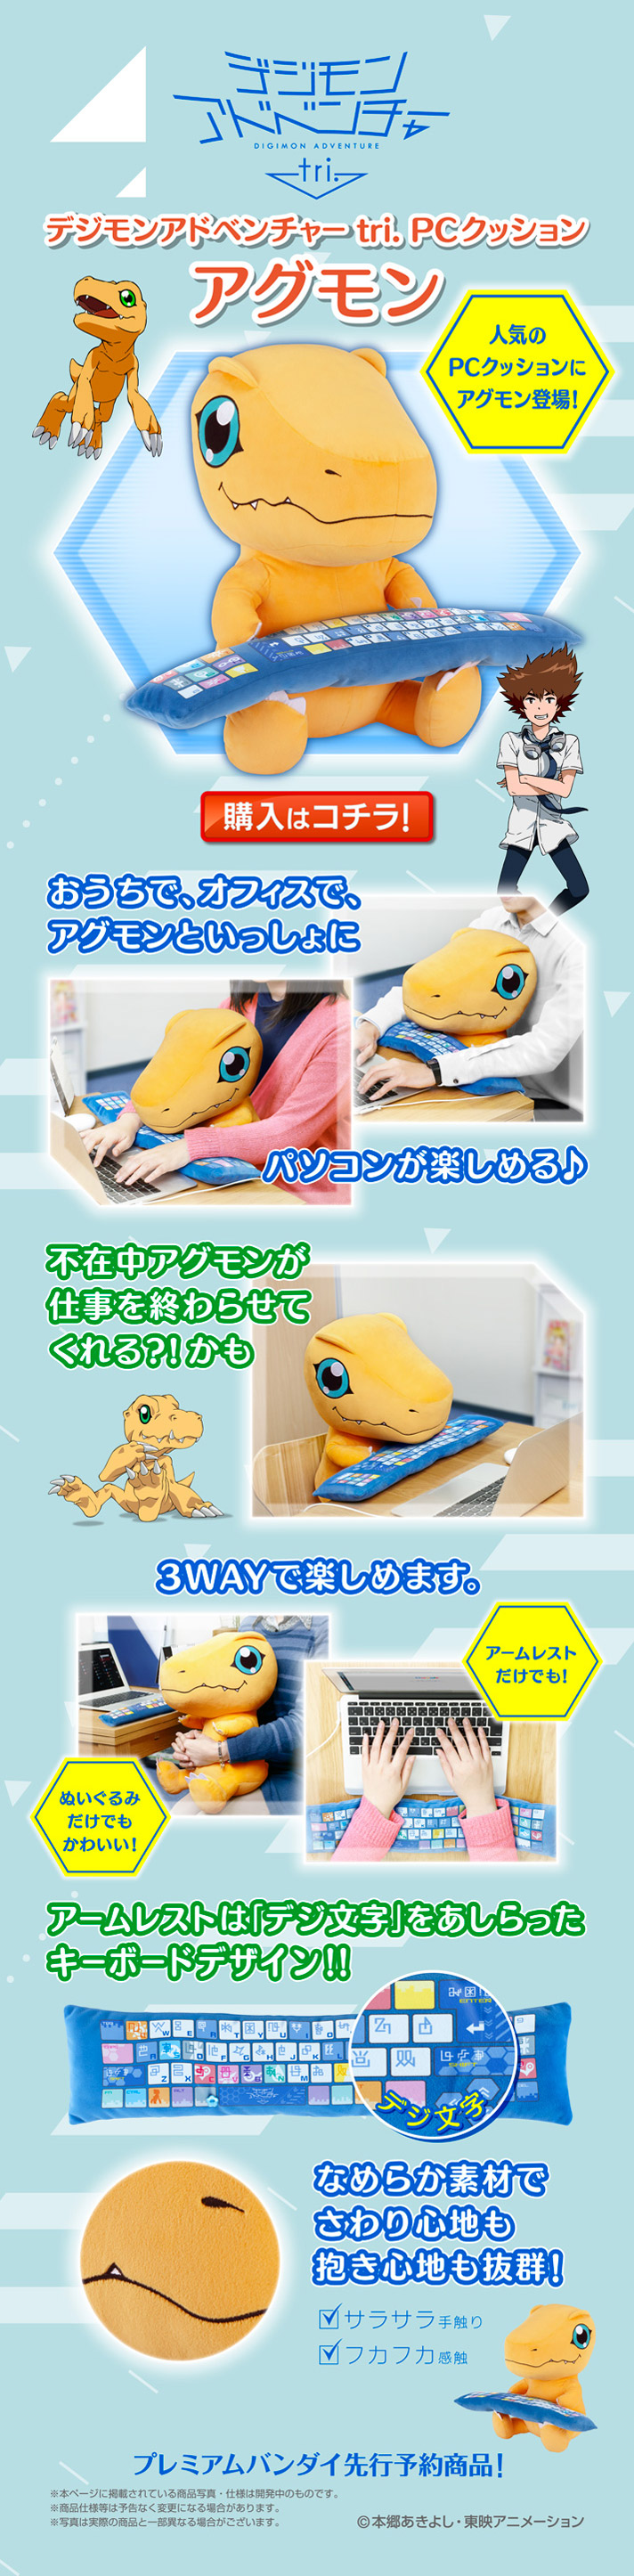 Digimon's Agumon PC Cushion Plush